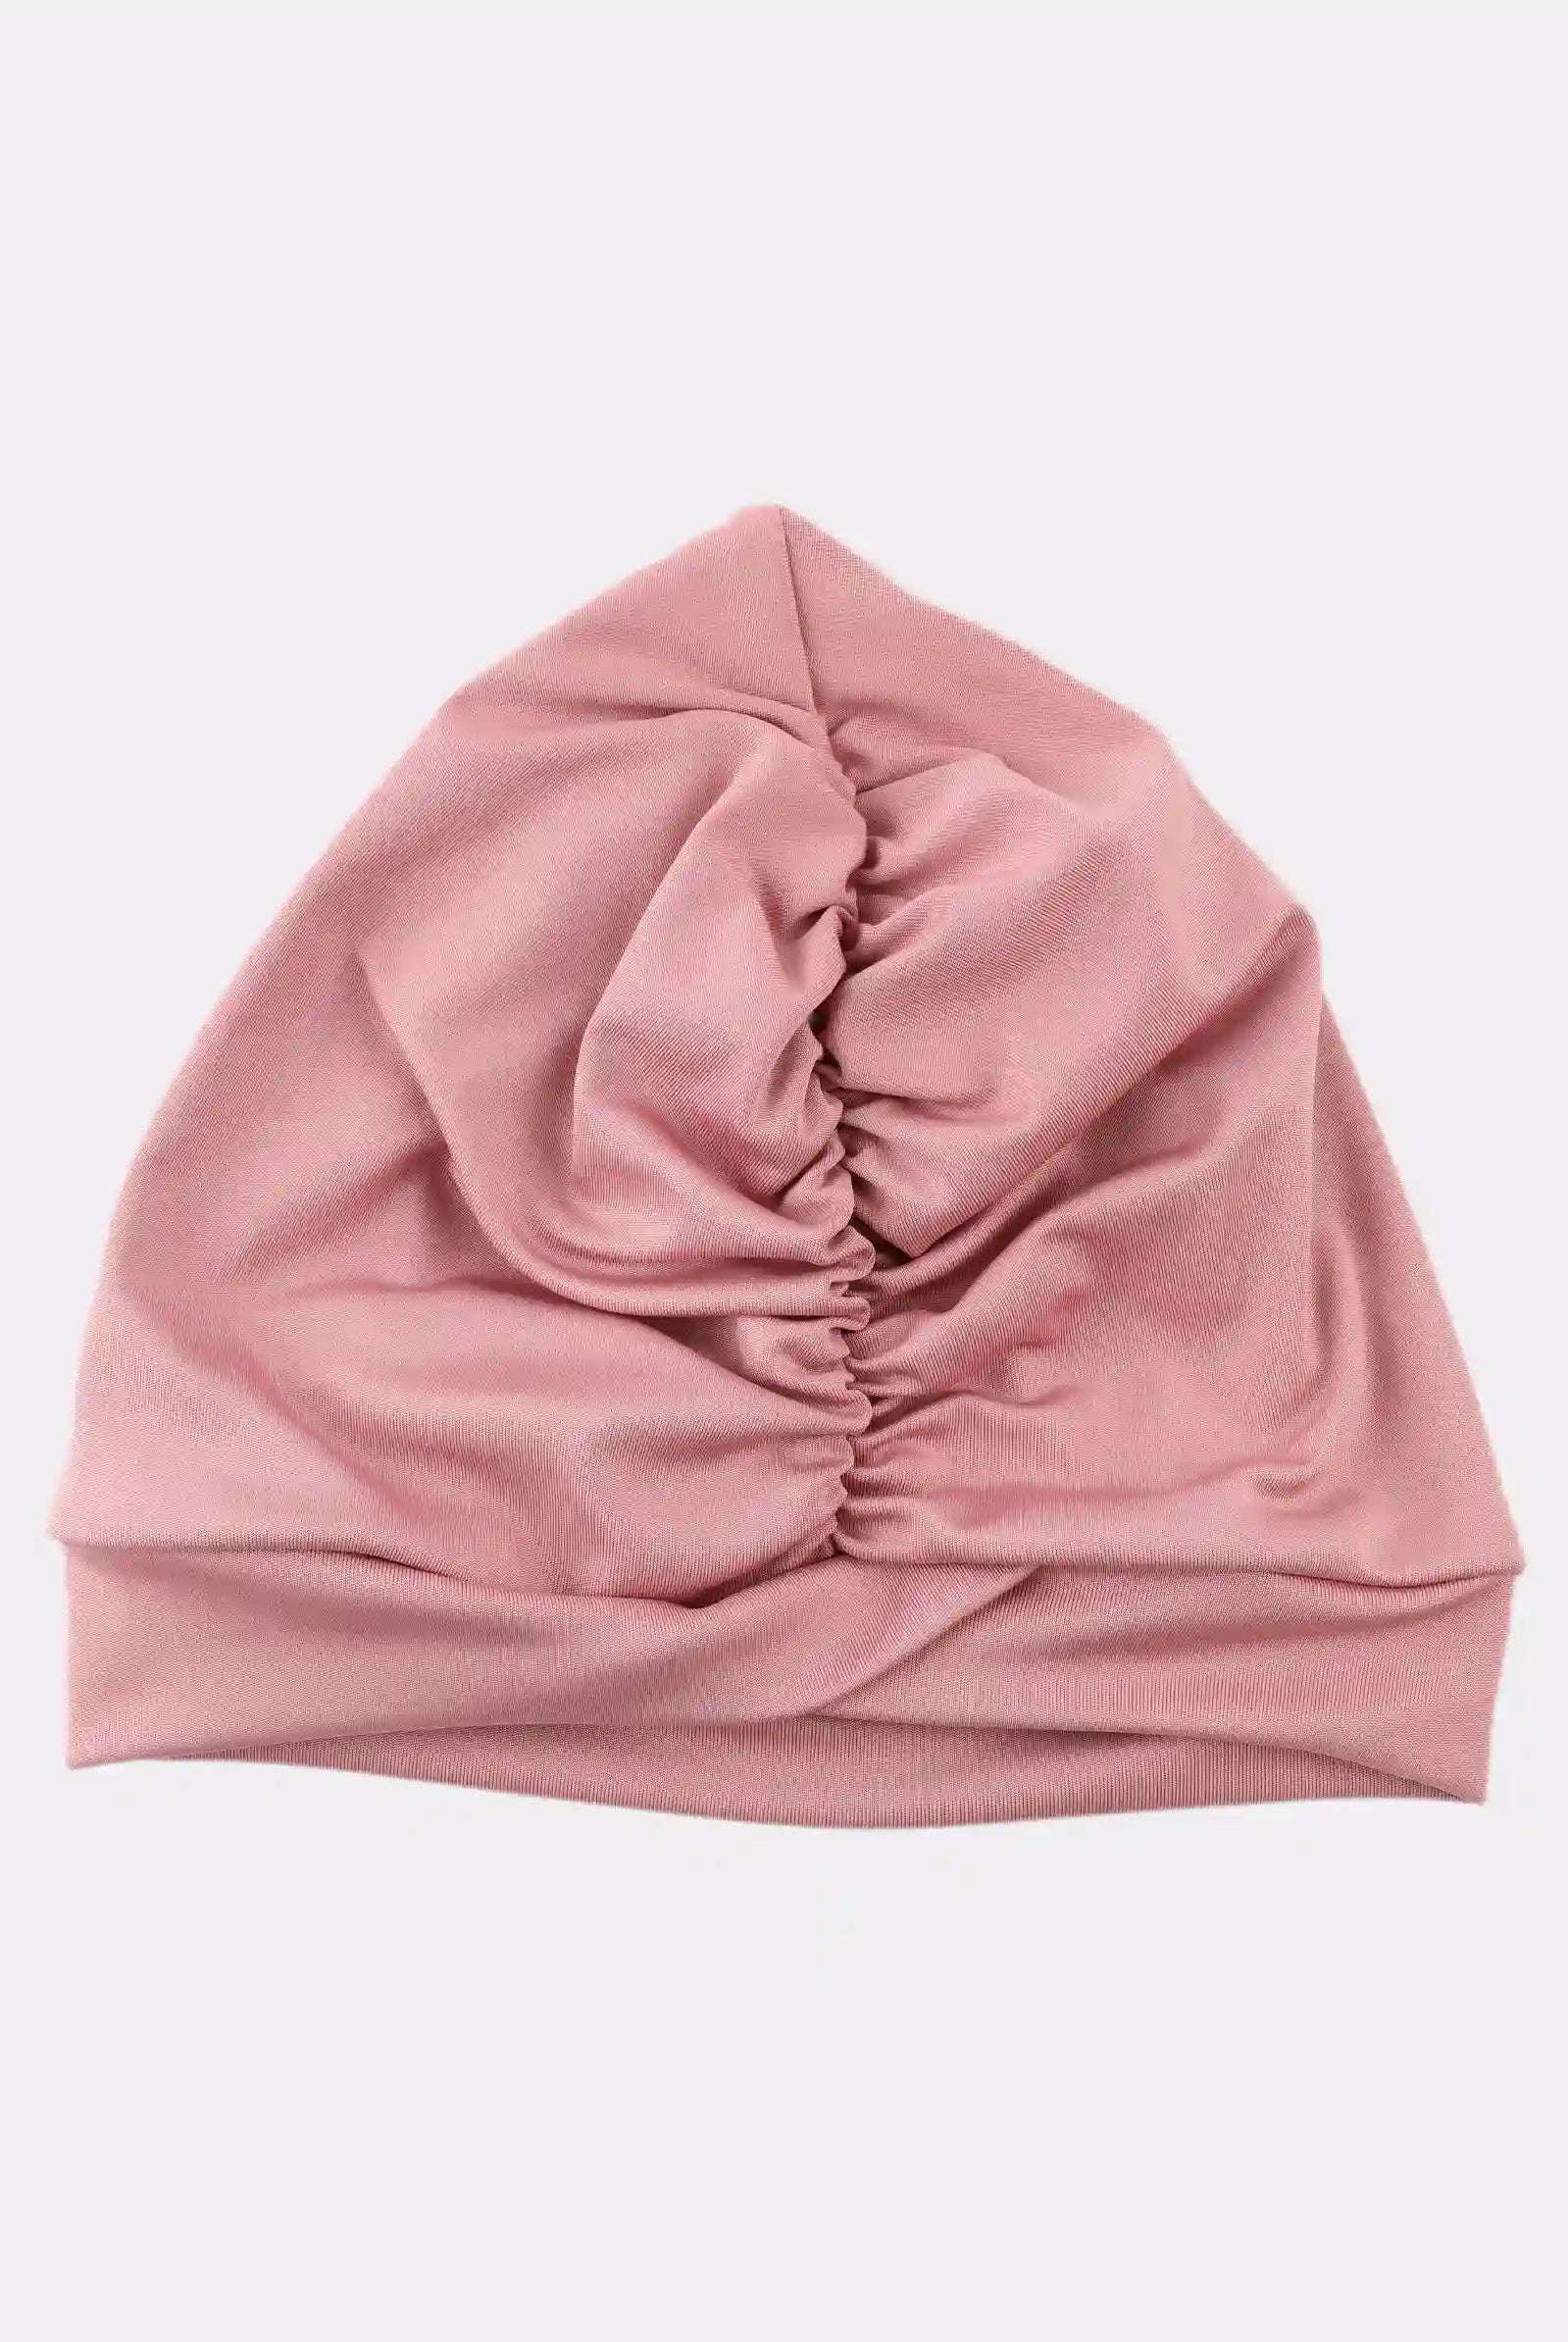 pink bathing cap